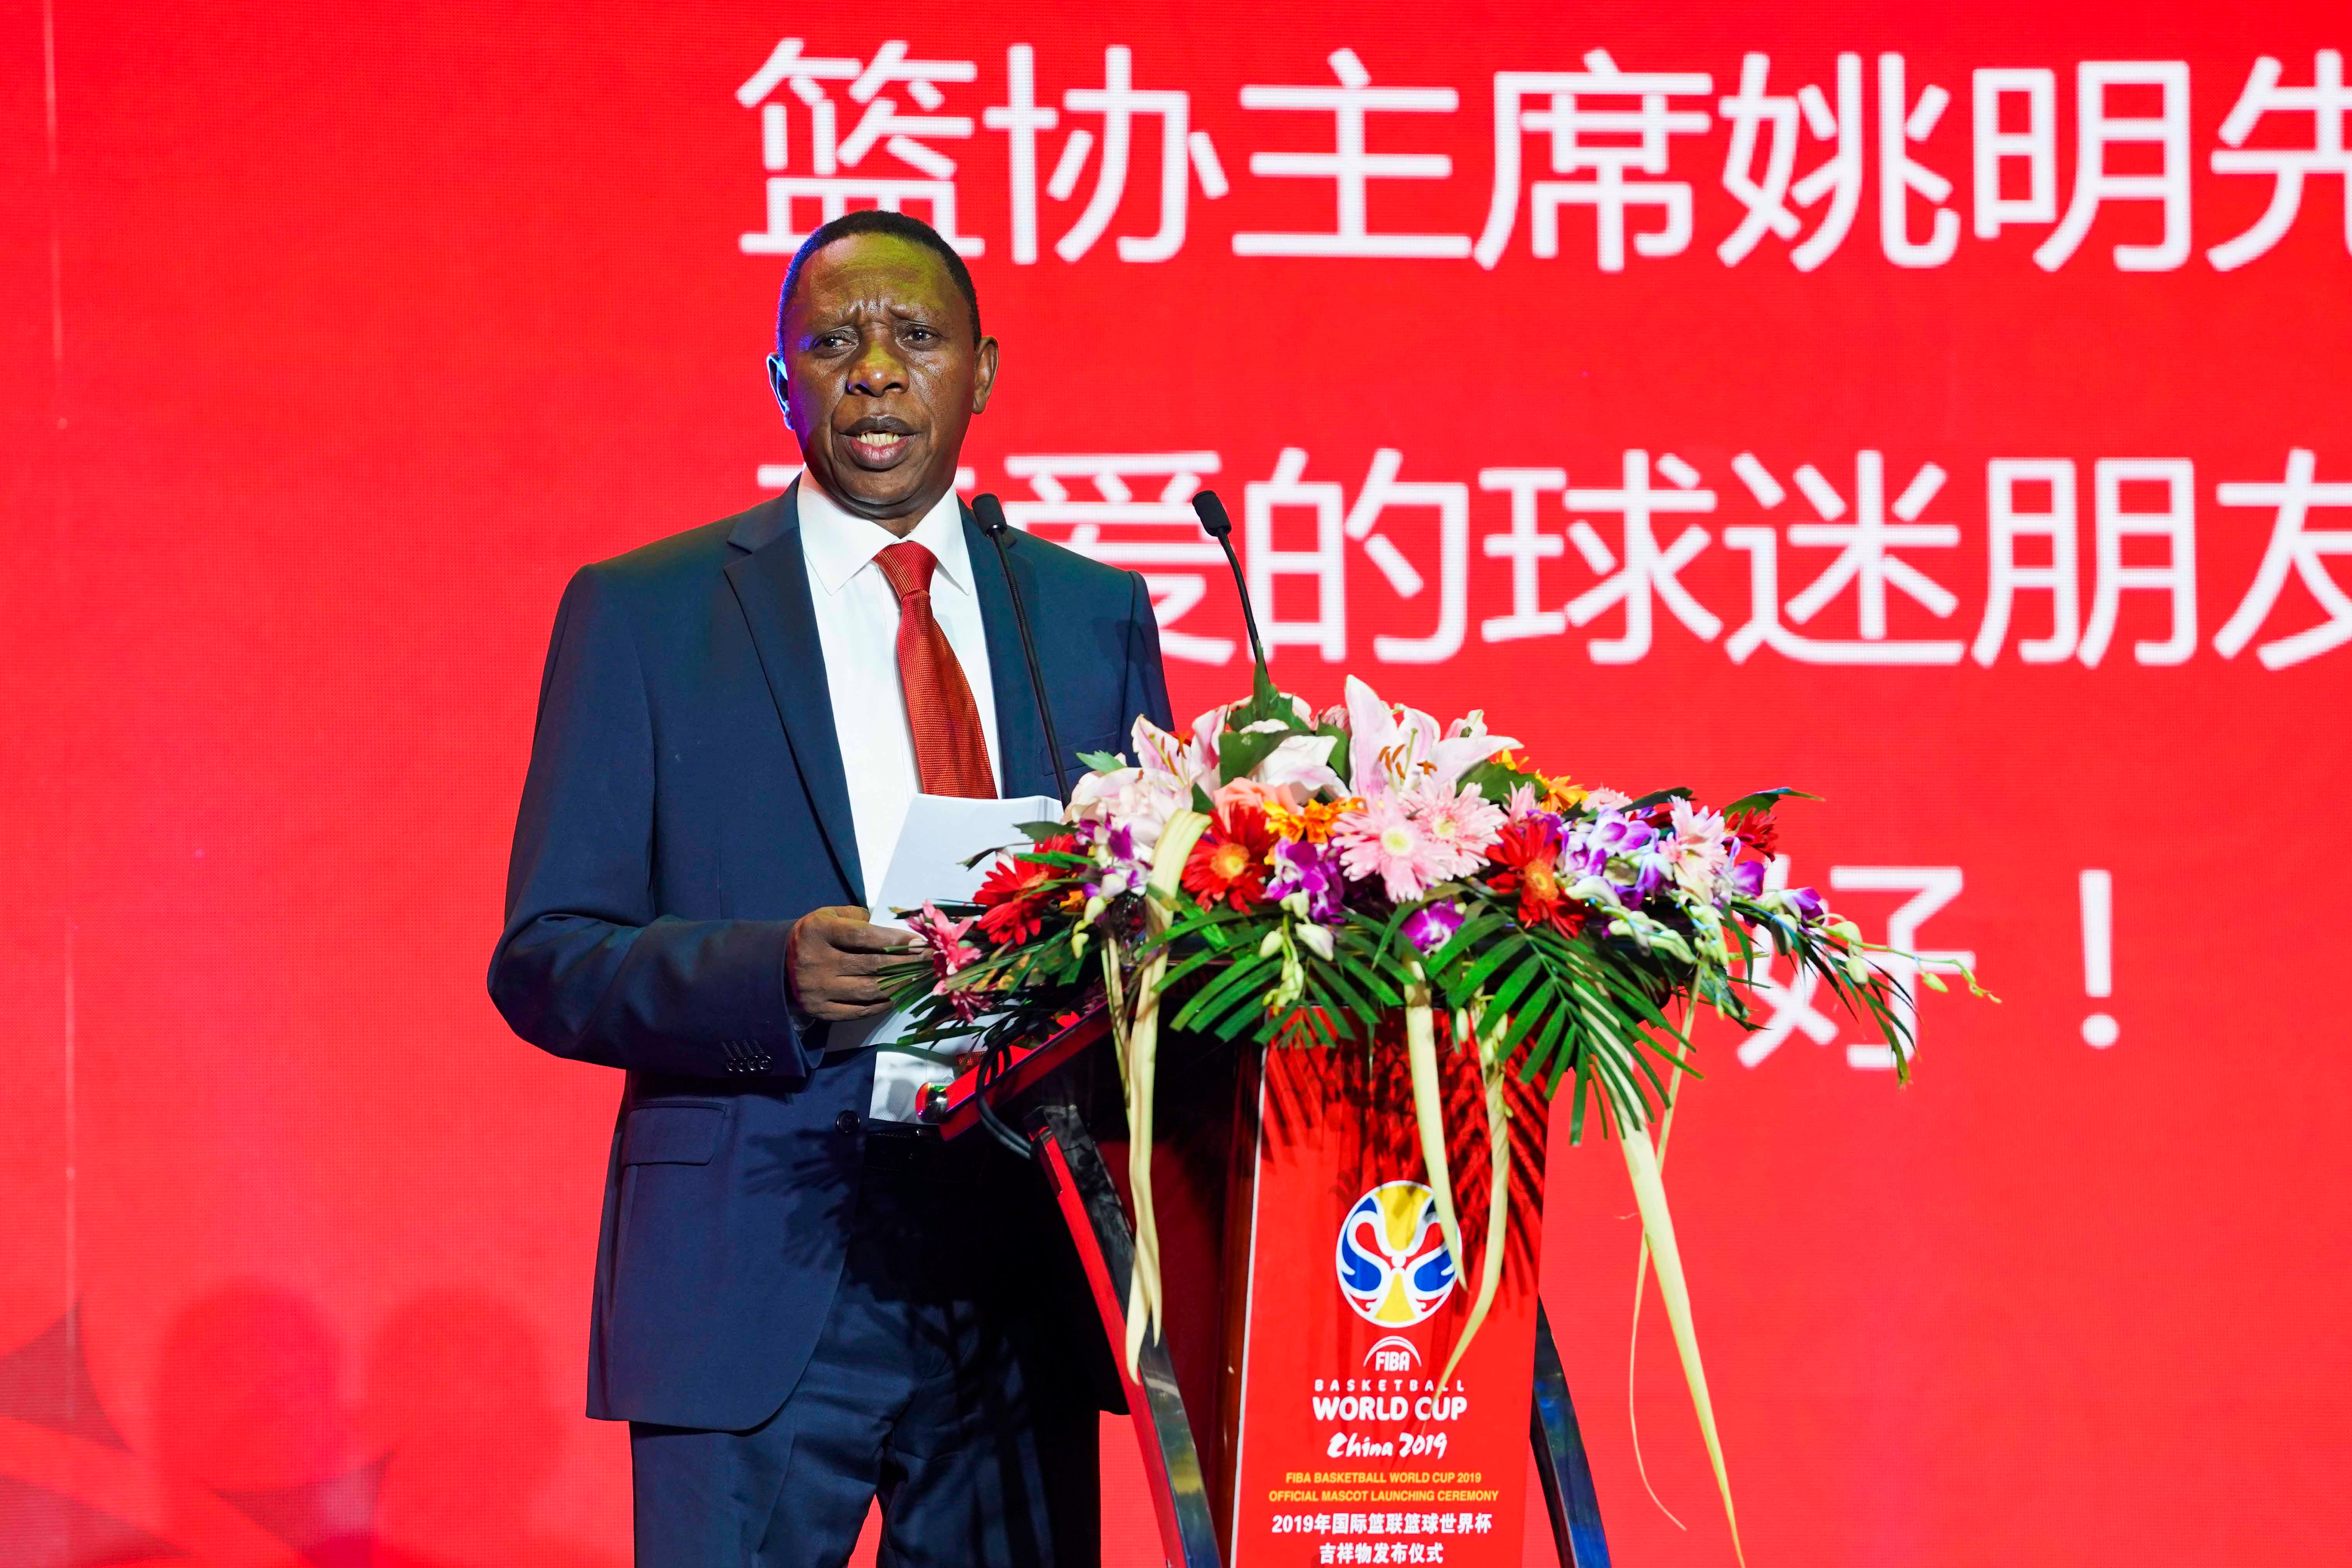 L'ancien président de la Fédération internationale de basketball (FIBA) Hamane Niang, photographié lors d’une cérémonie officielle à Pékin le 18 avril 2018, annonçant la tenue de la Coupe du monde de basketball FIBA 2019 en Chine.